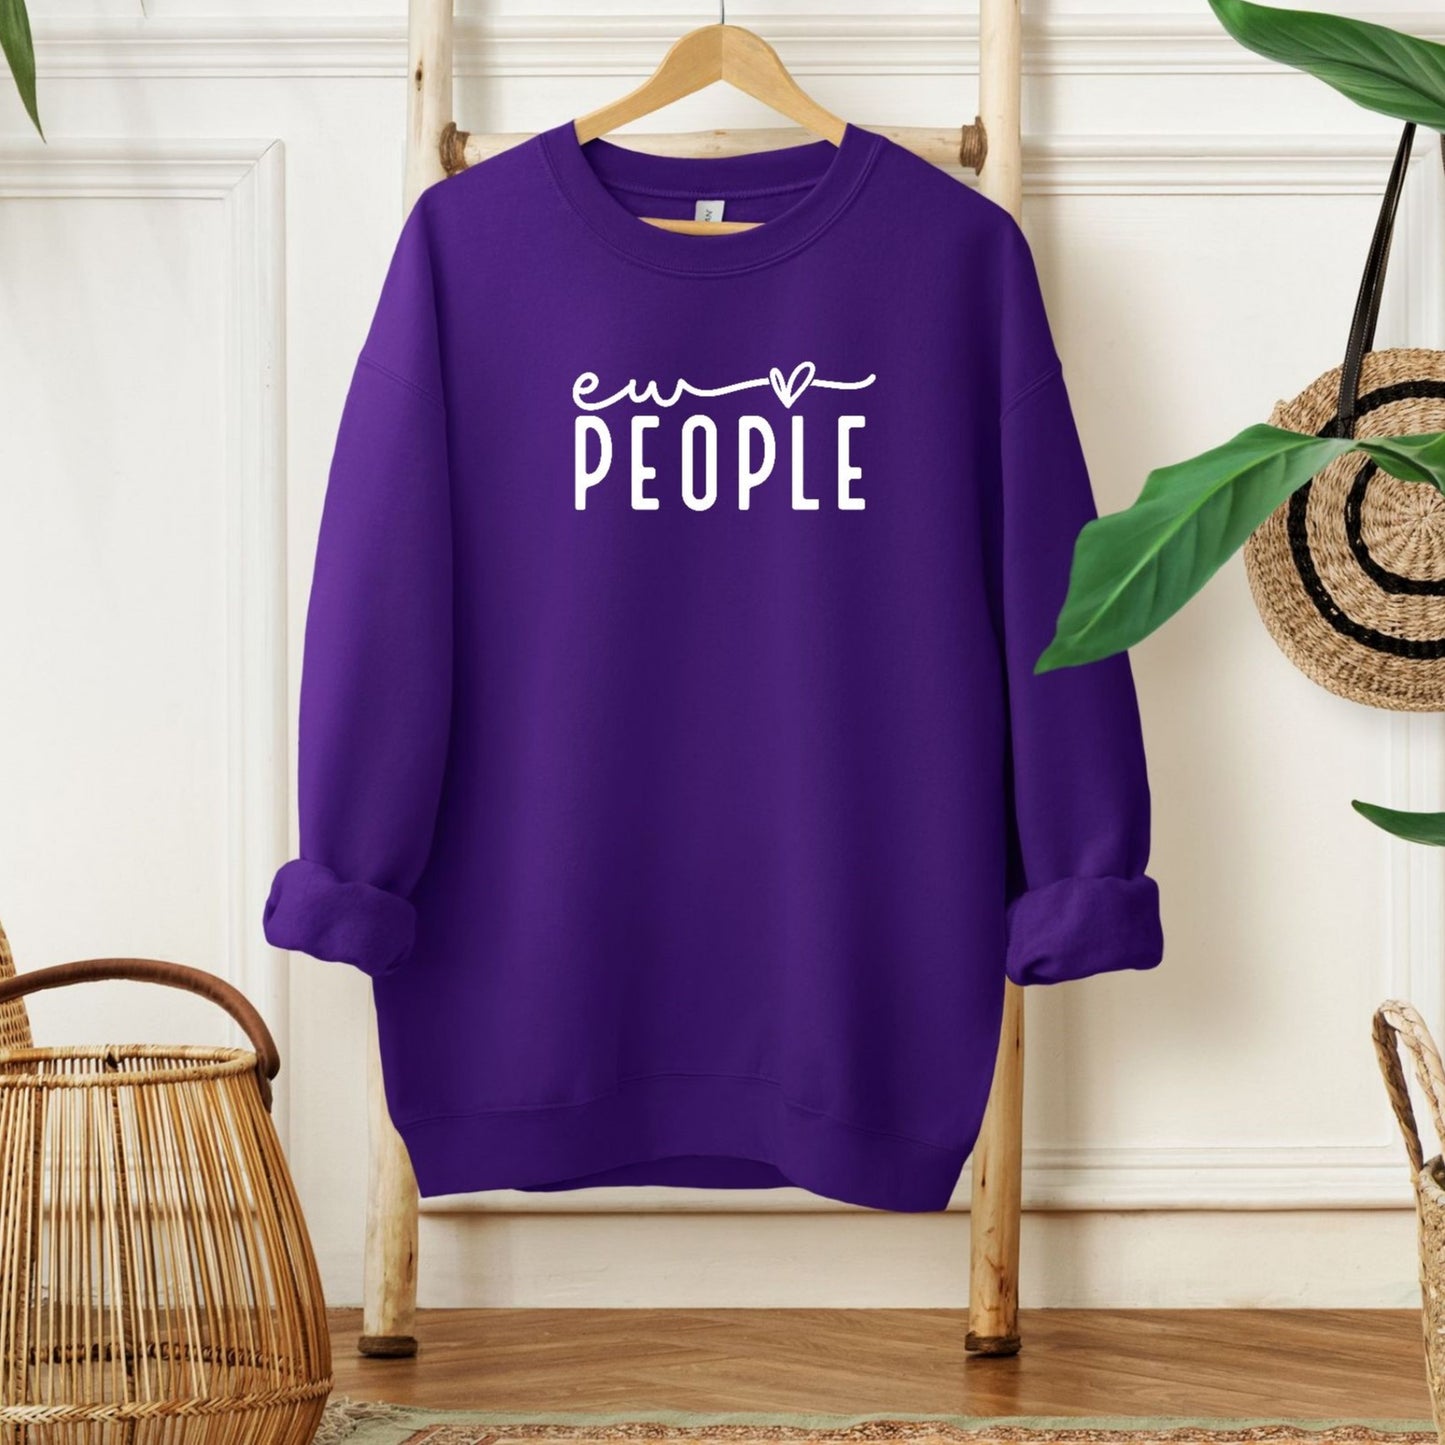 Ew People Sweatshirt